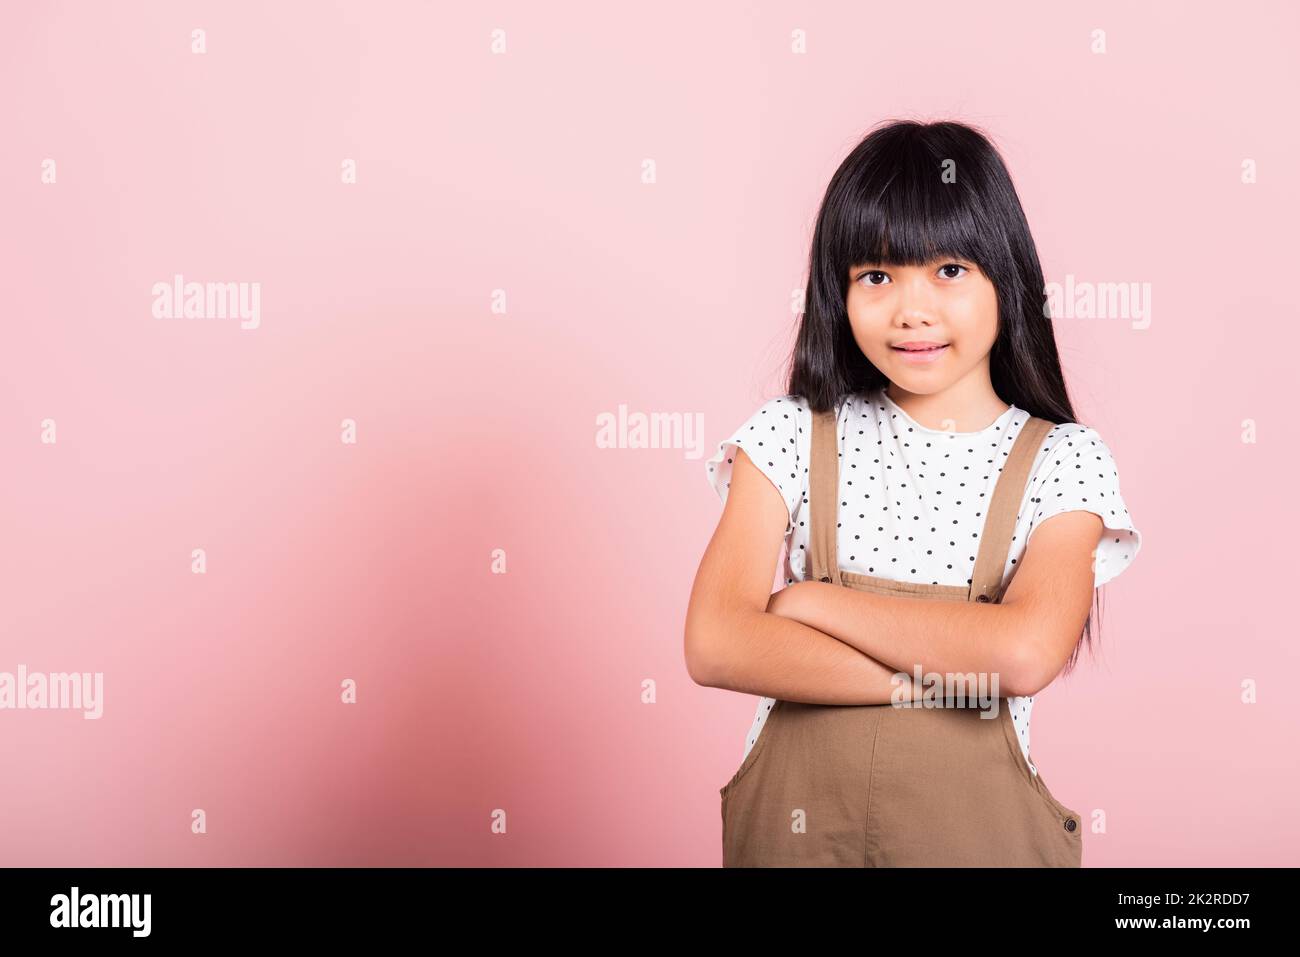 Petit enfant asiatique de 10 ans souriant avec les bras croisés Banque D'Images